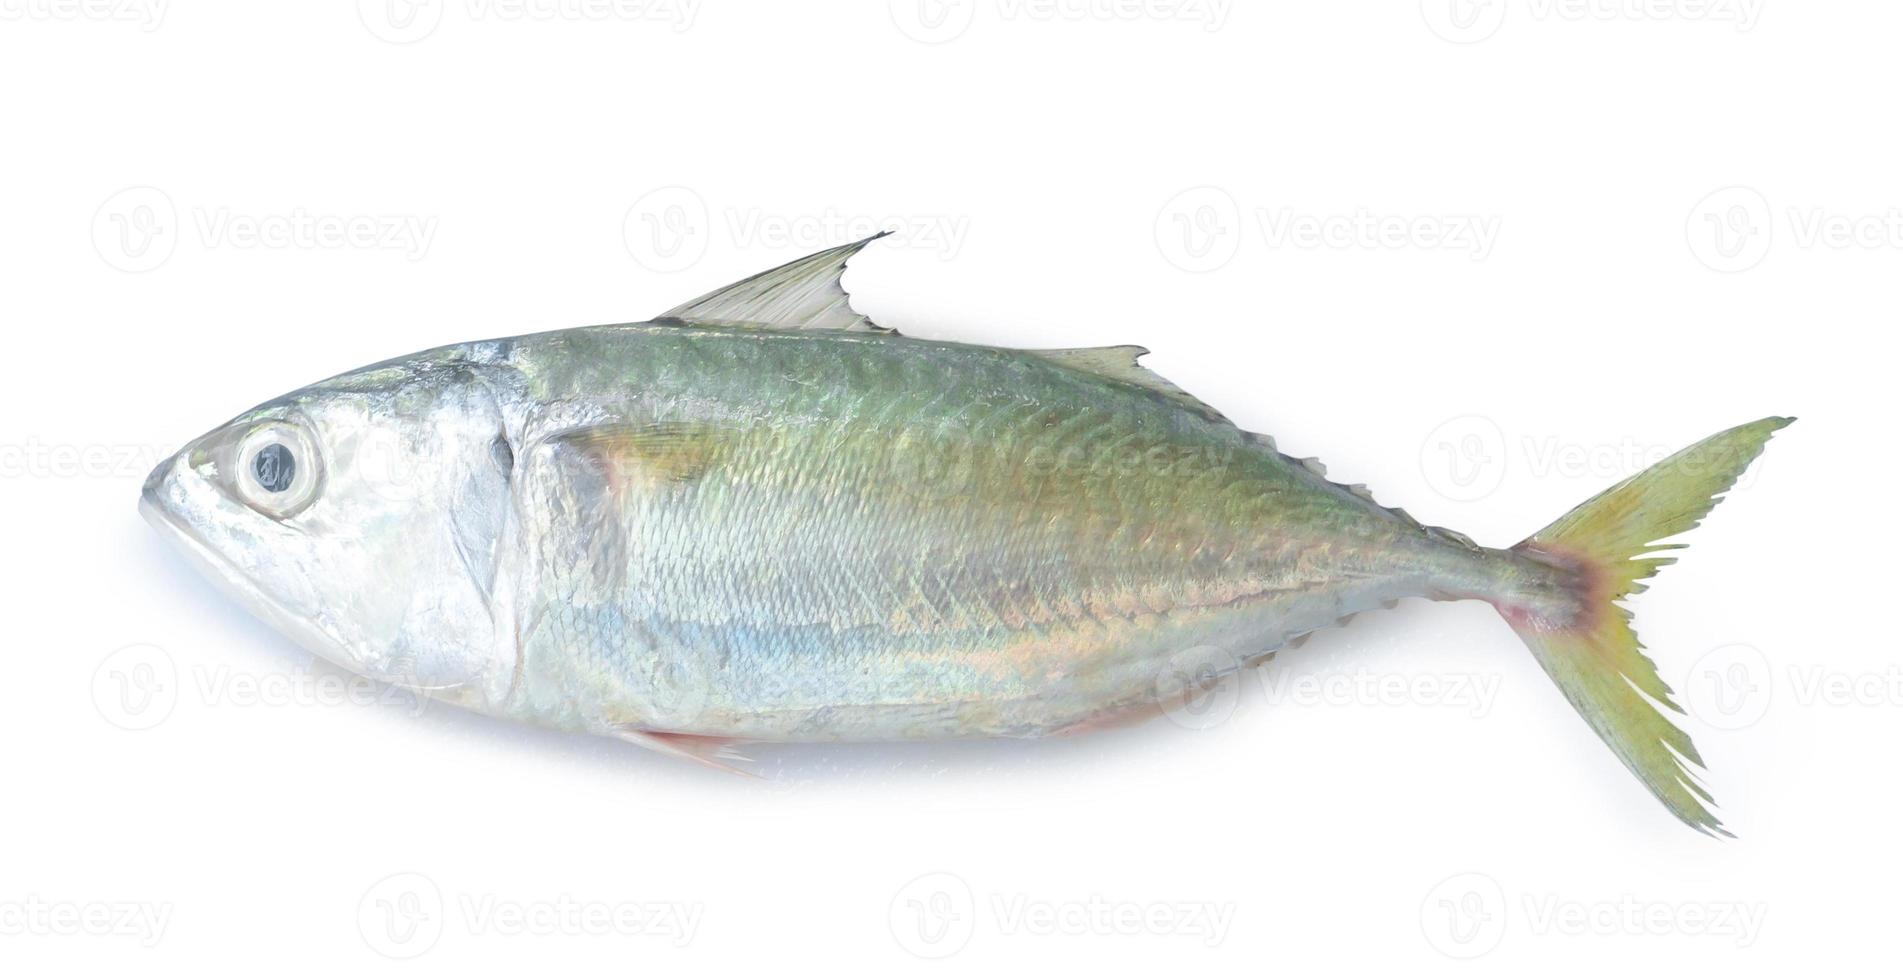 Single fresh mackerel fishs iisolated on white background with c photo